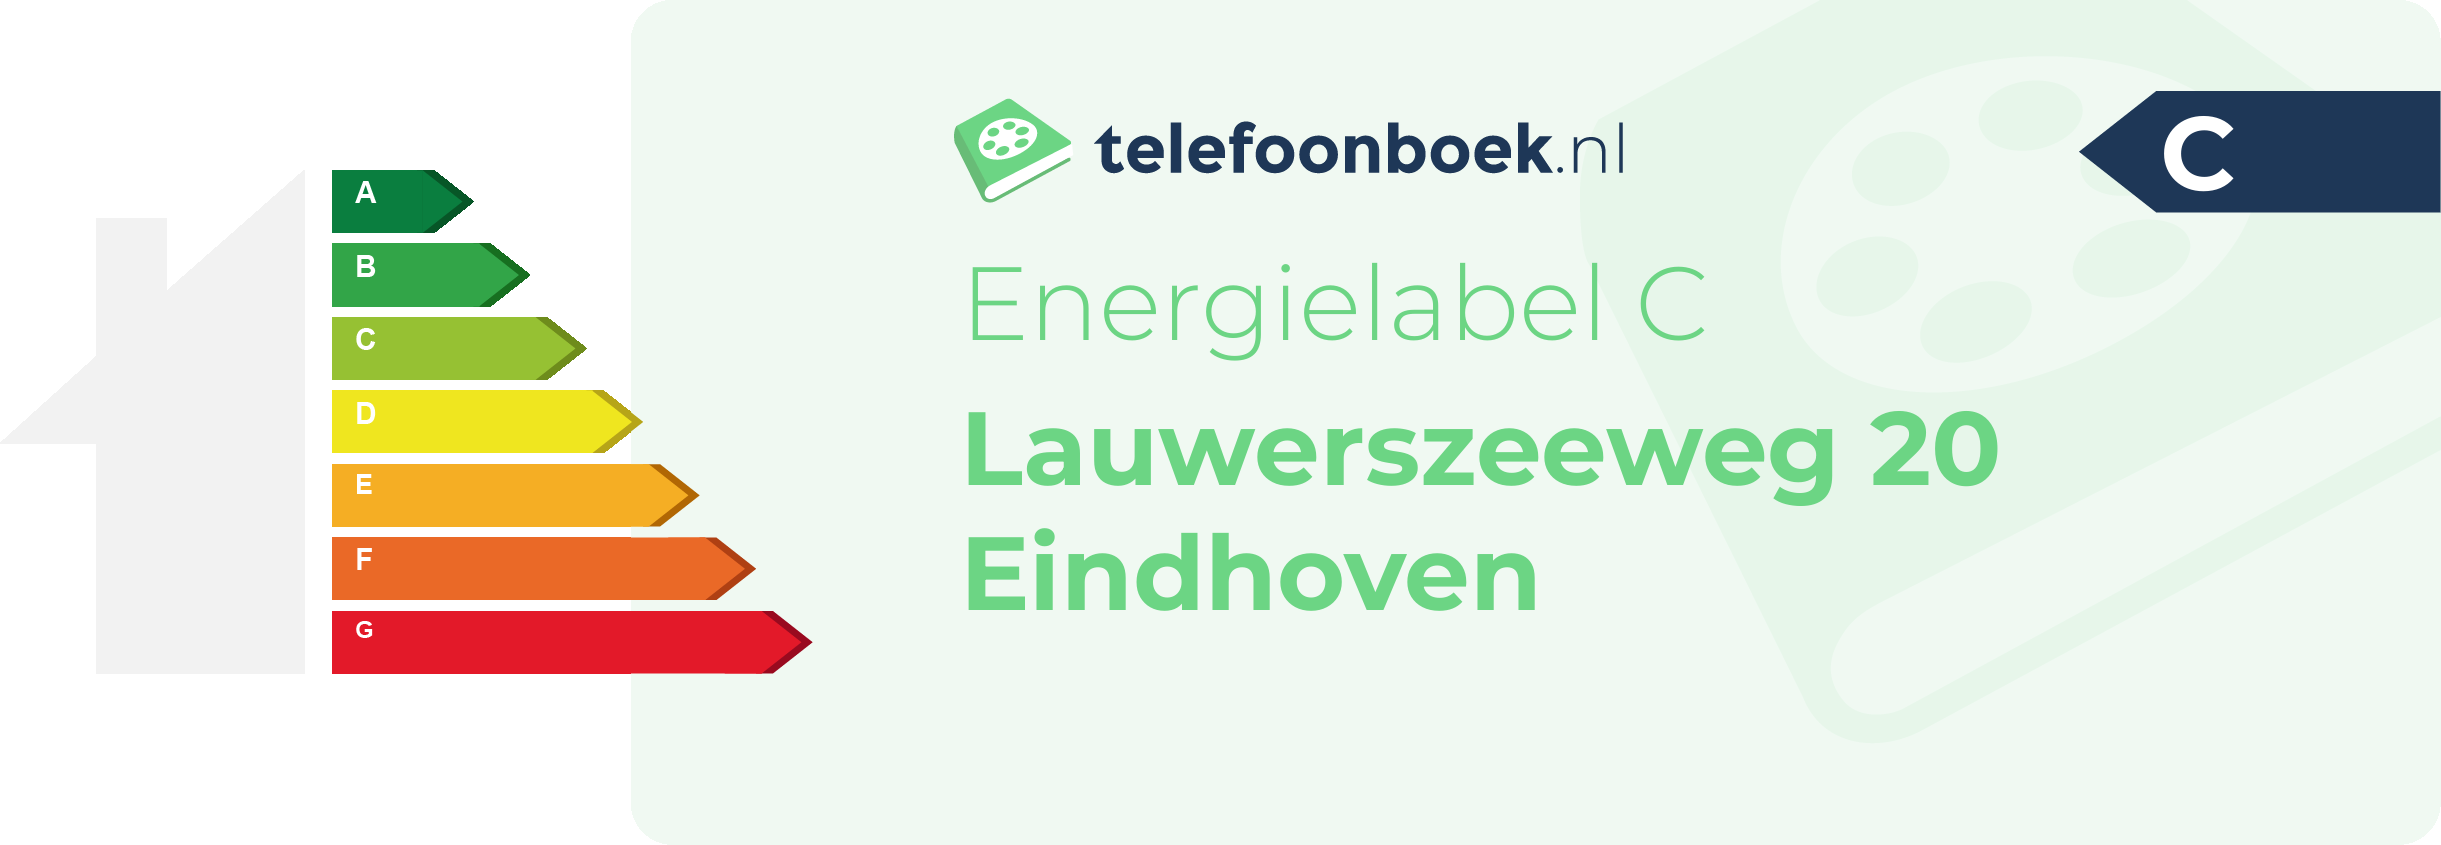 Energielabel Lauwerszeeweg 20 Eindhoven